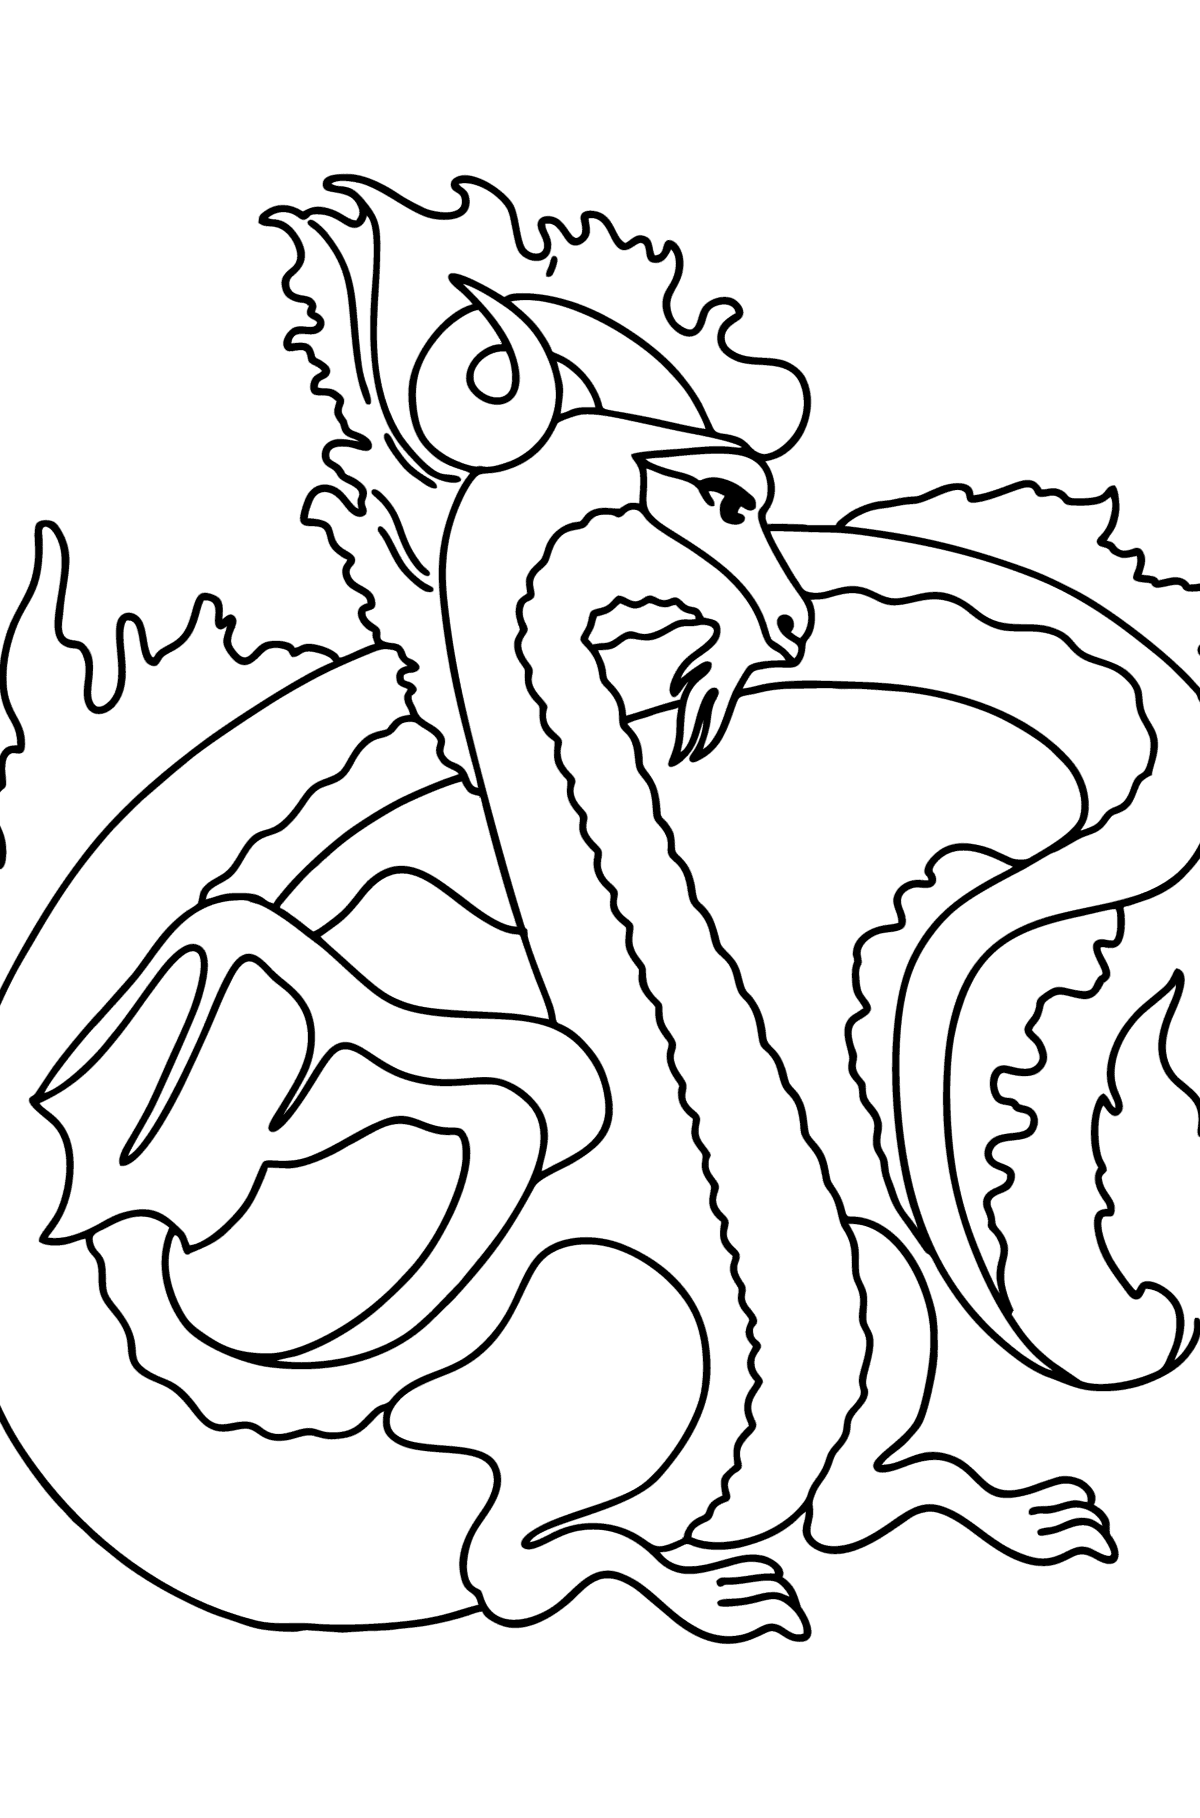 Kleurplaat mythische draak - kleurplaten voor kinderen